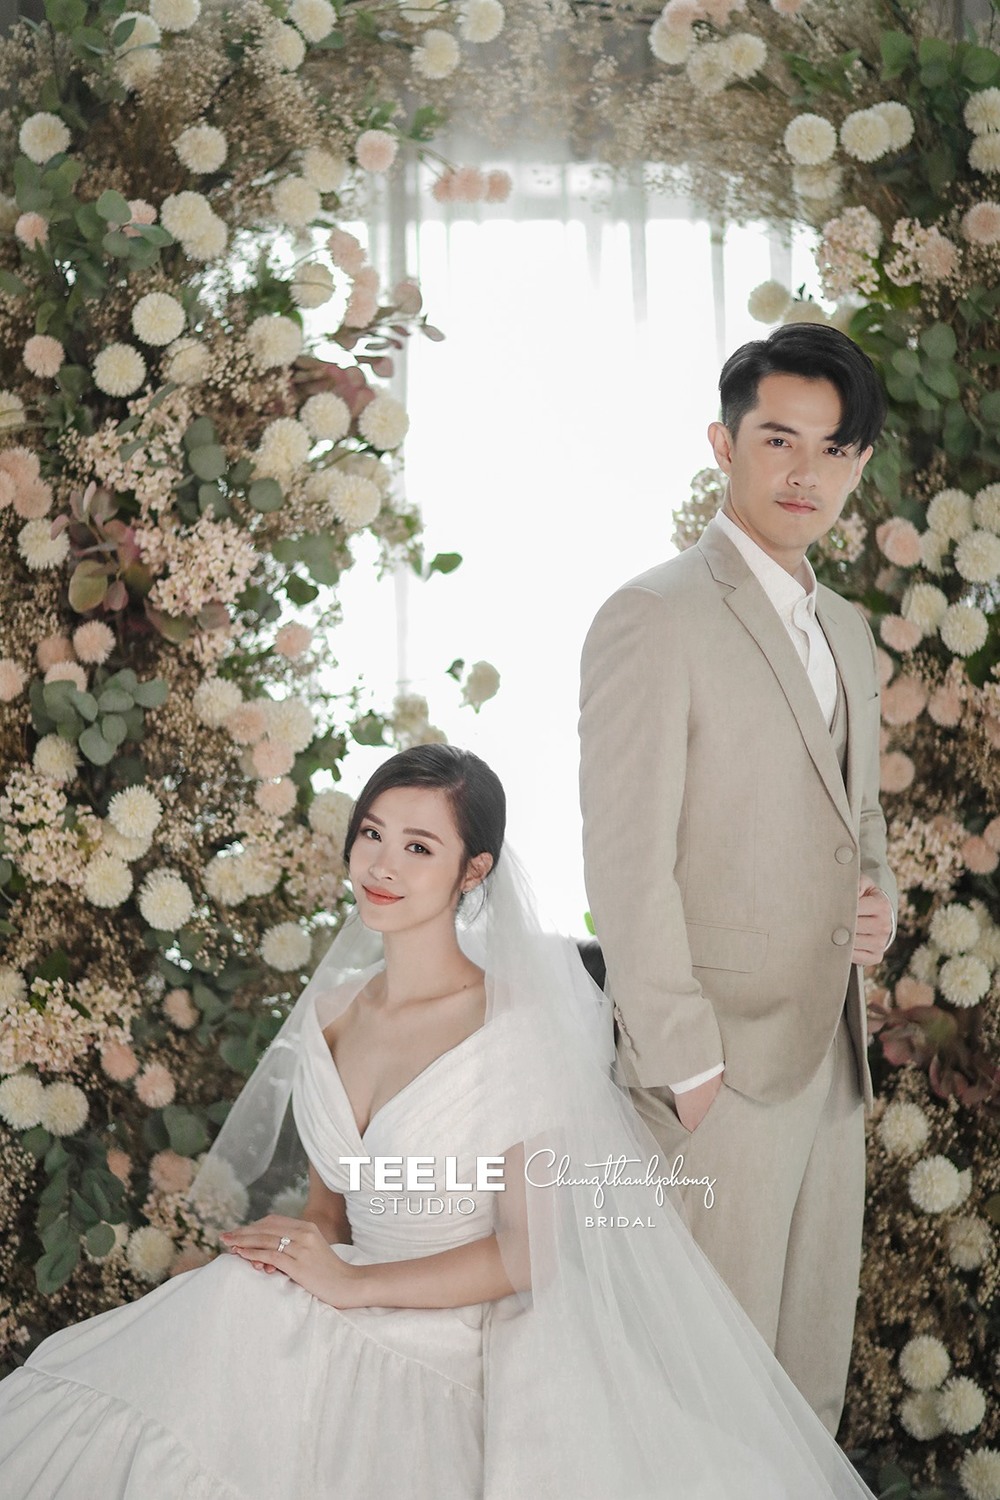  
Bộ ảnh cưới đẹp xuất sắc của cặp đôi. (Ảnh: Facebook NV) - Tin sao Viet - Tin tuc sao Viet - Scandal sao Viet - Tin tuc cua Sao - Tin cua Sao